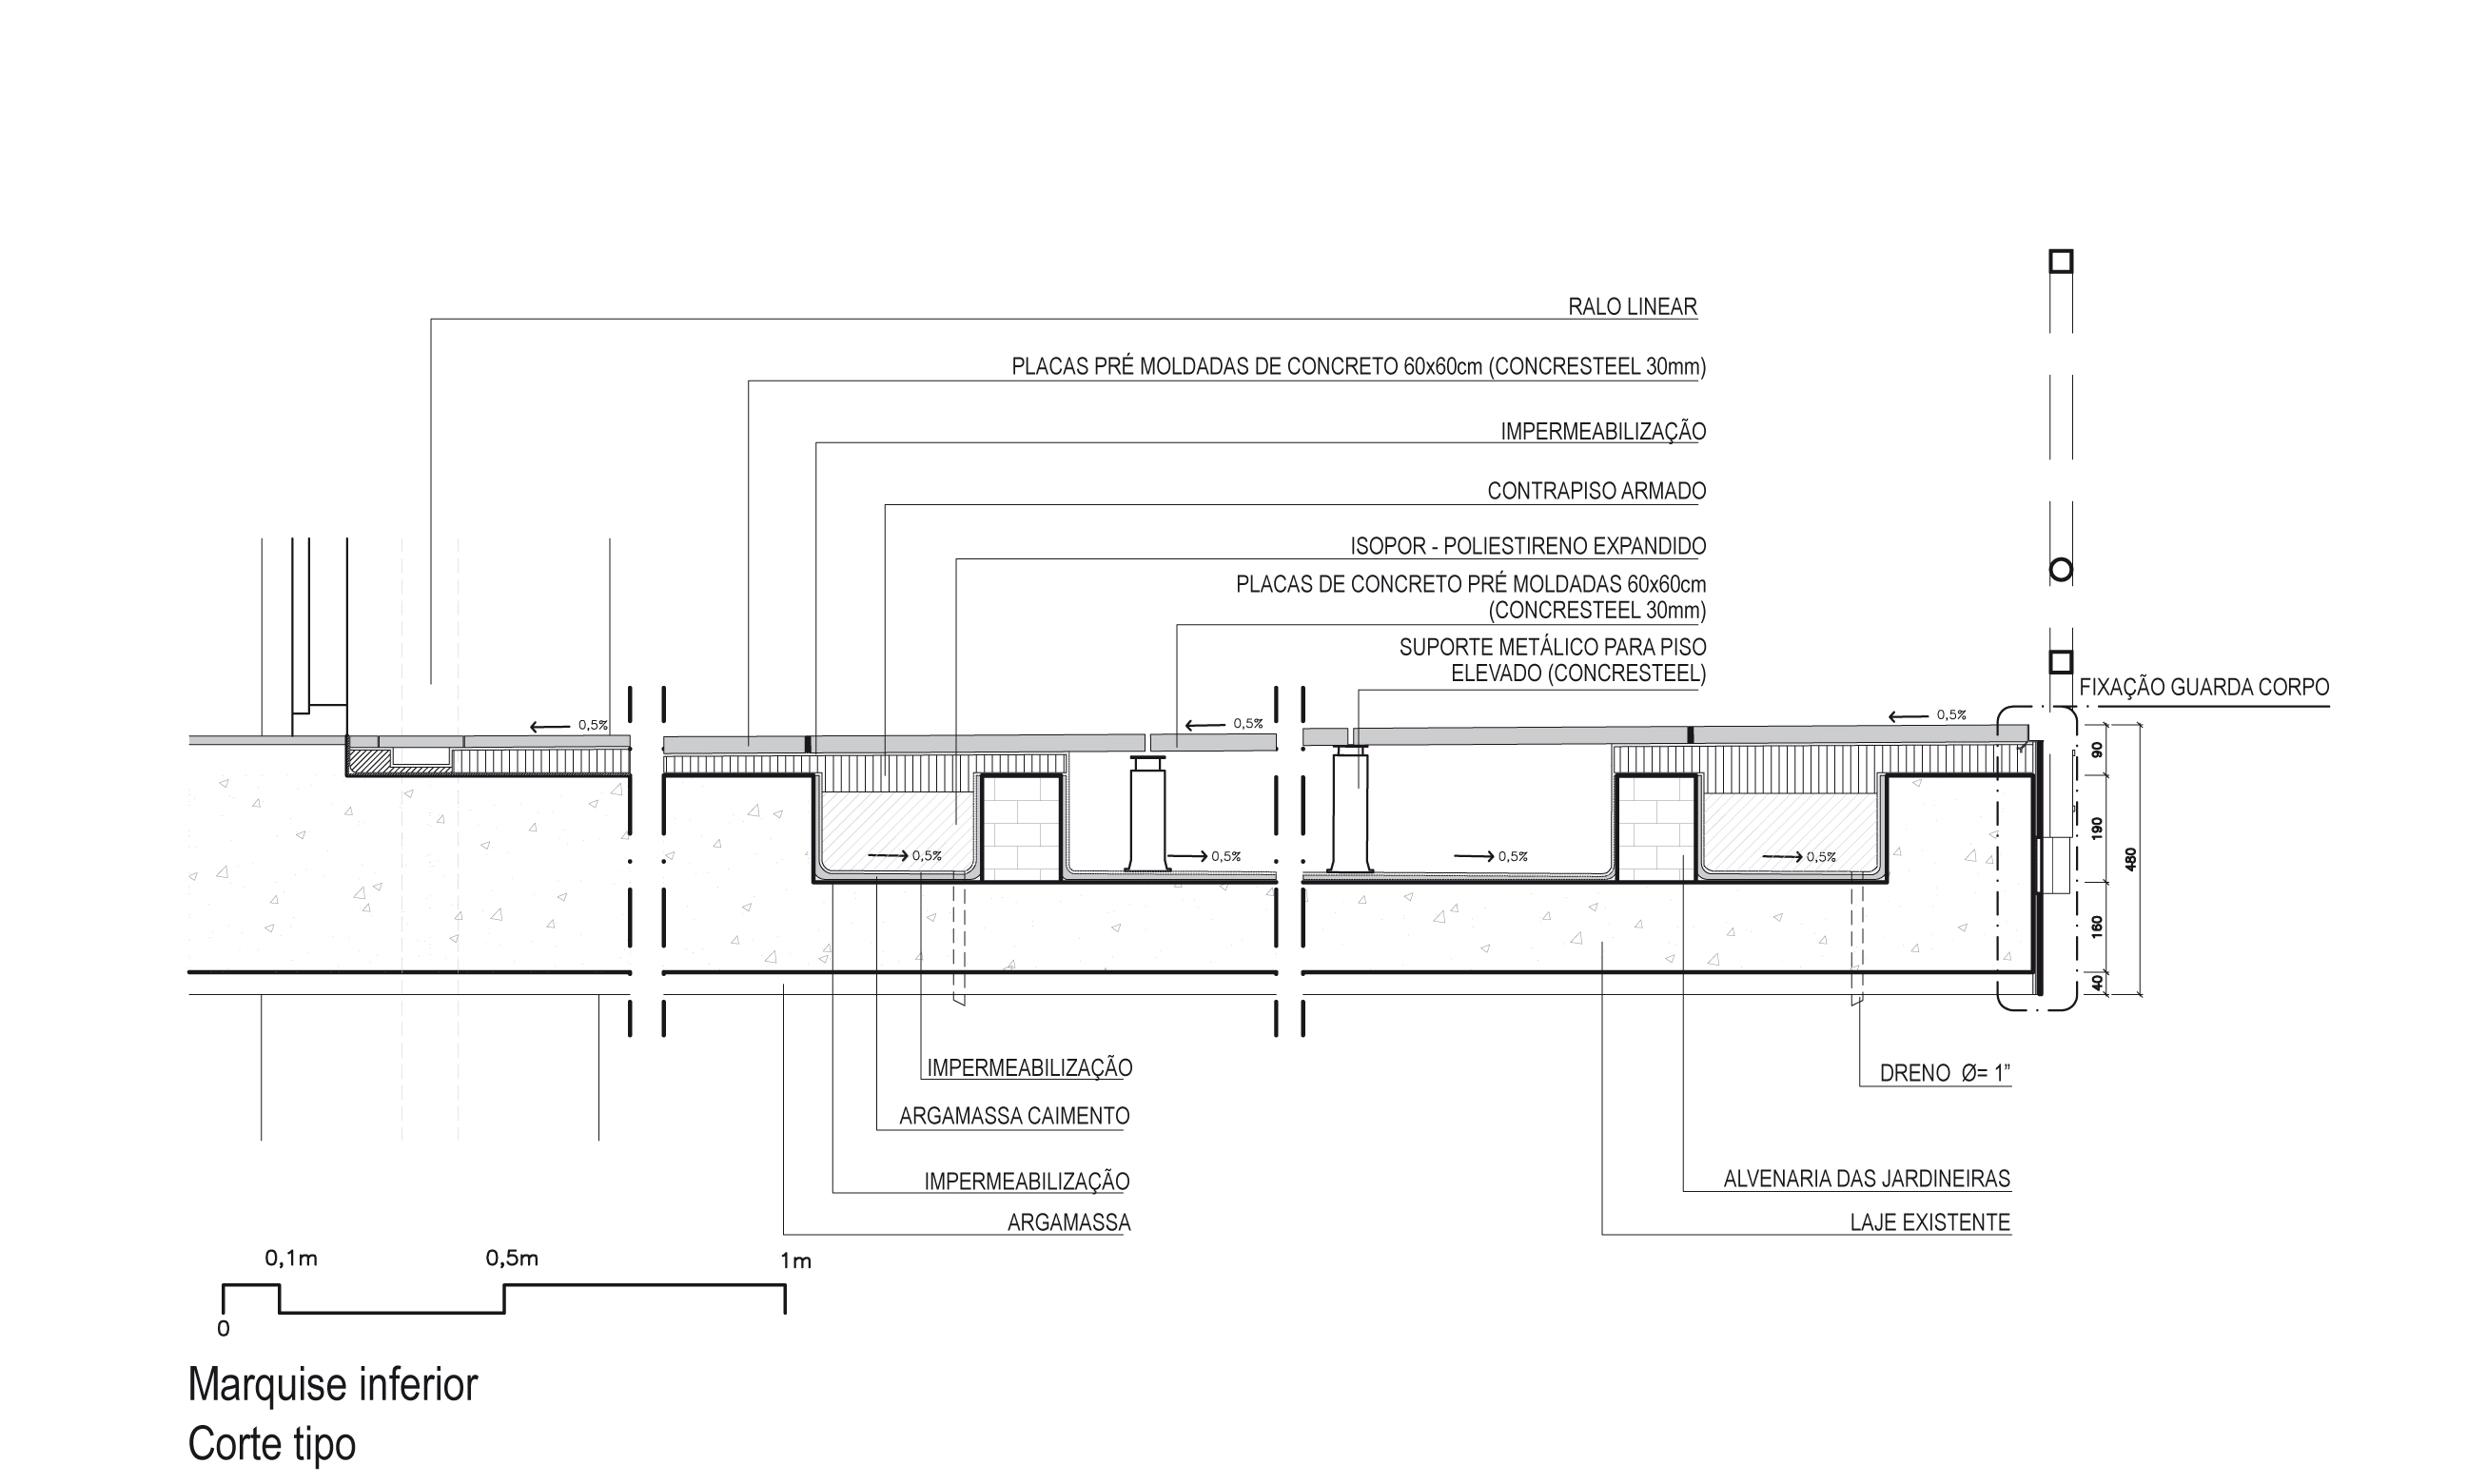 Fig.6. Detalhe das soluções de restauro para o piso da marquise inferior (fonte: acervo Metrópole Arquitetos)